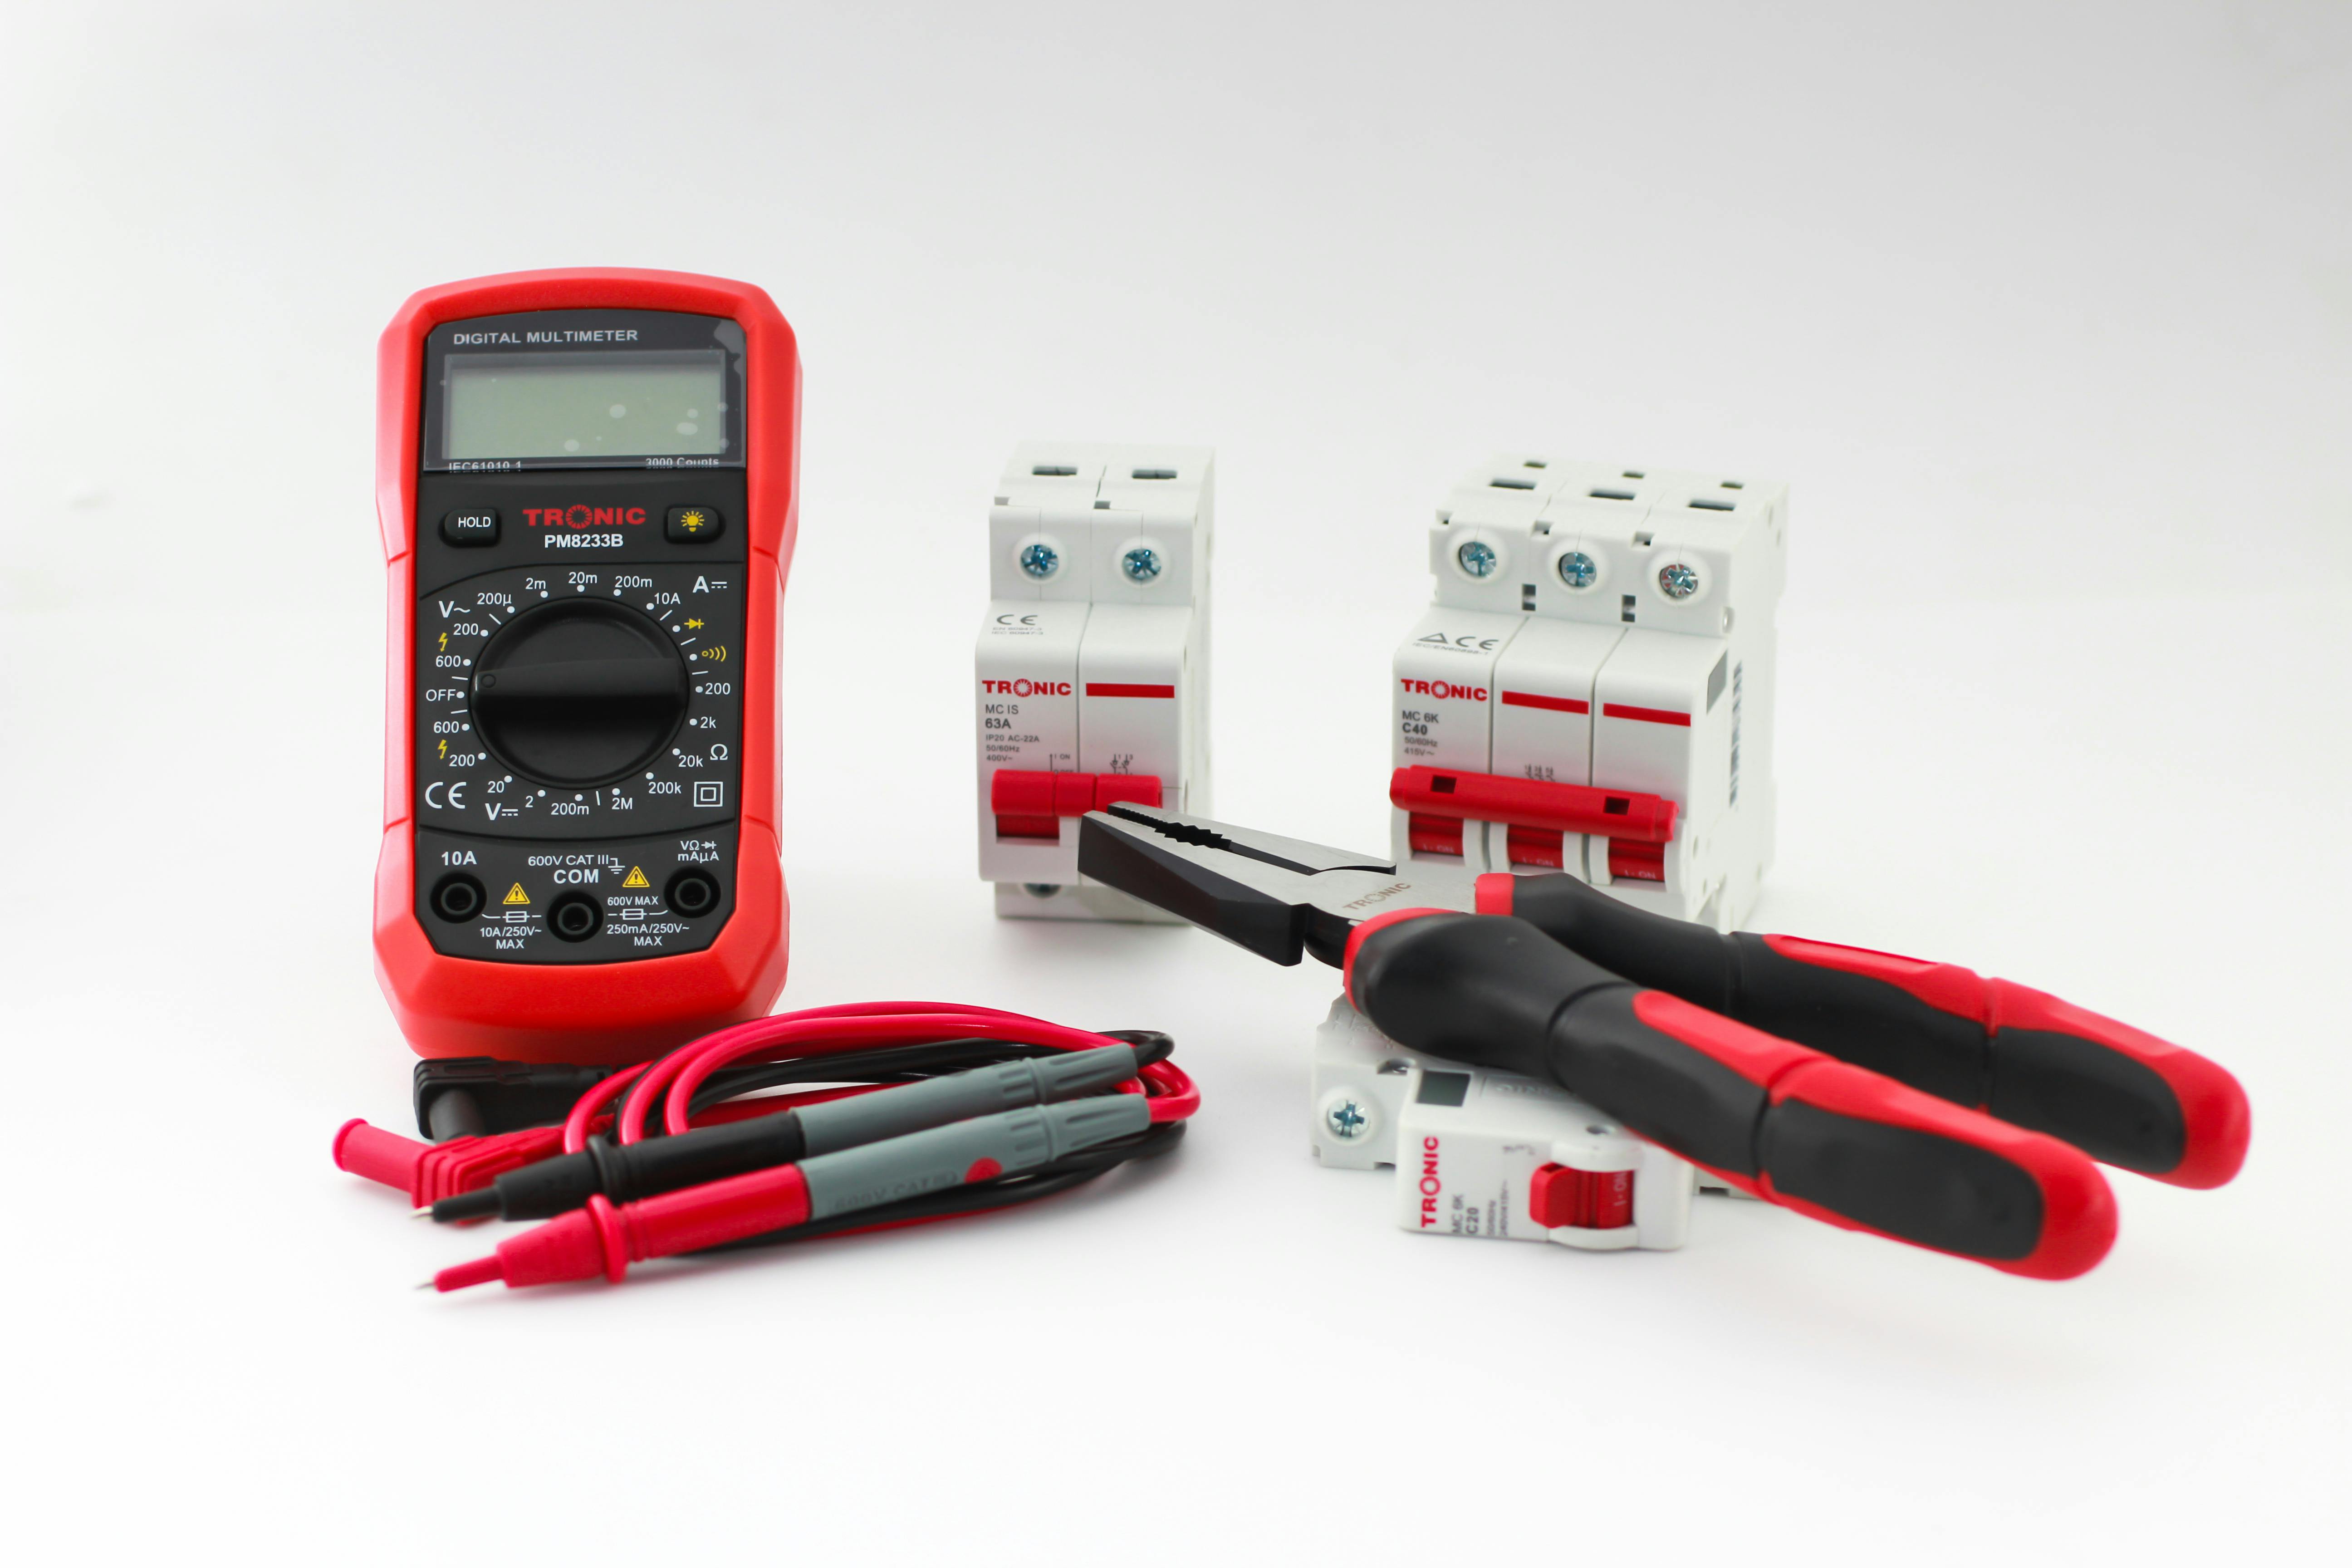 ETEKCITY MSR-R500 Digital Multimeter and Voltage Tester User Manual